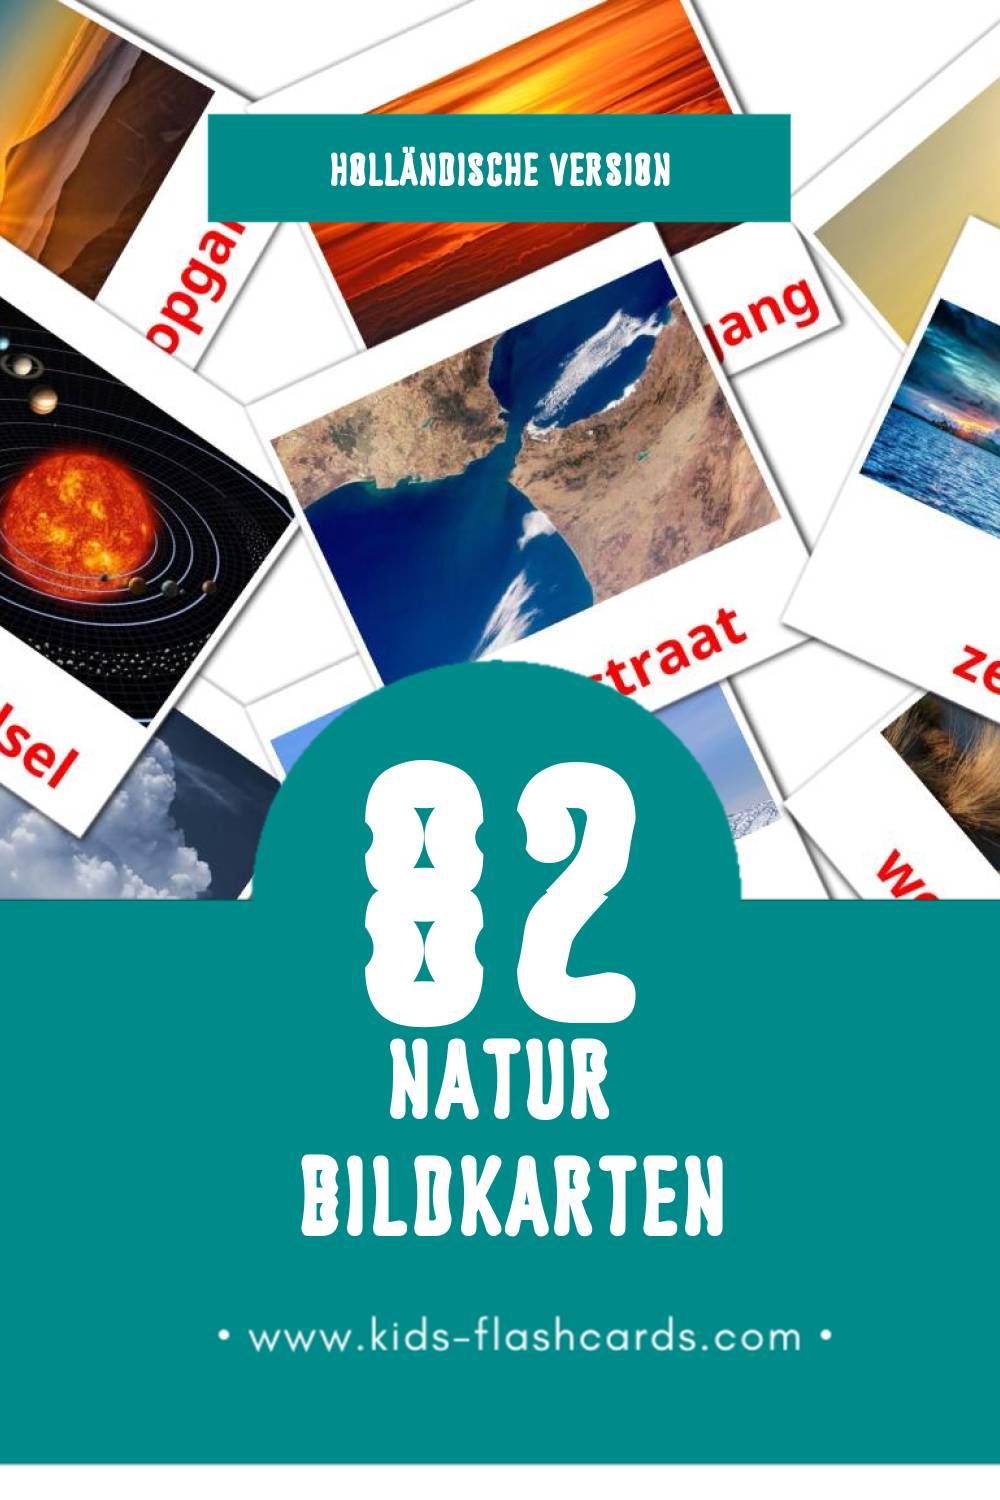 Visual Natuur Flashcards für Kleinkinder (31 Karten in Holländisch)